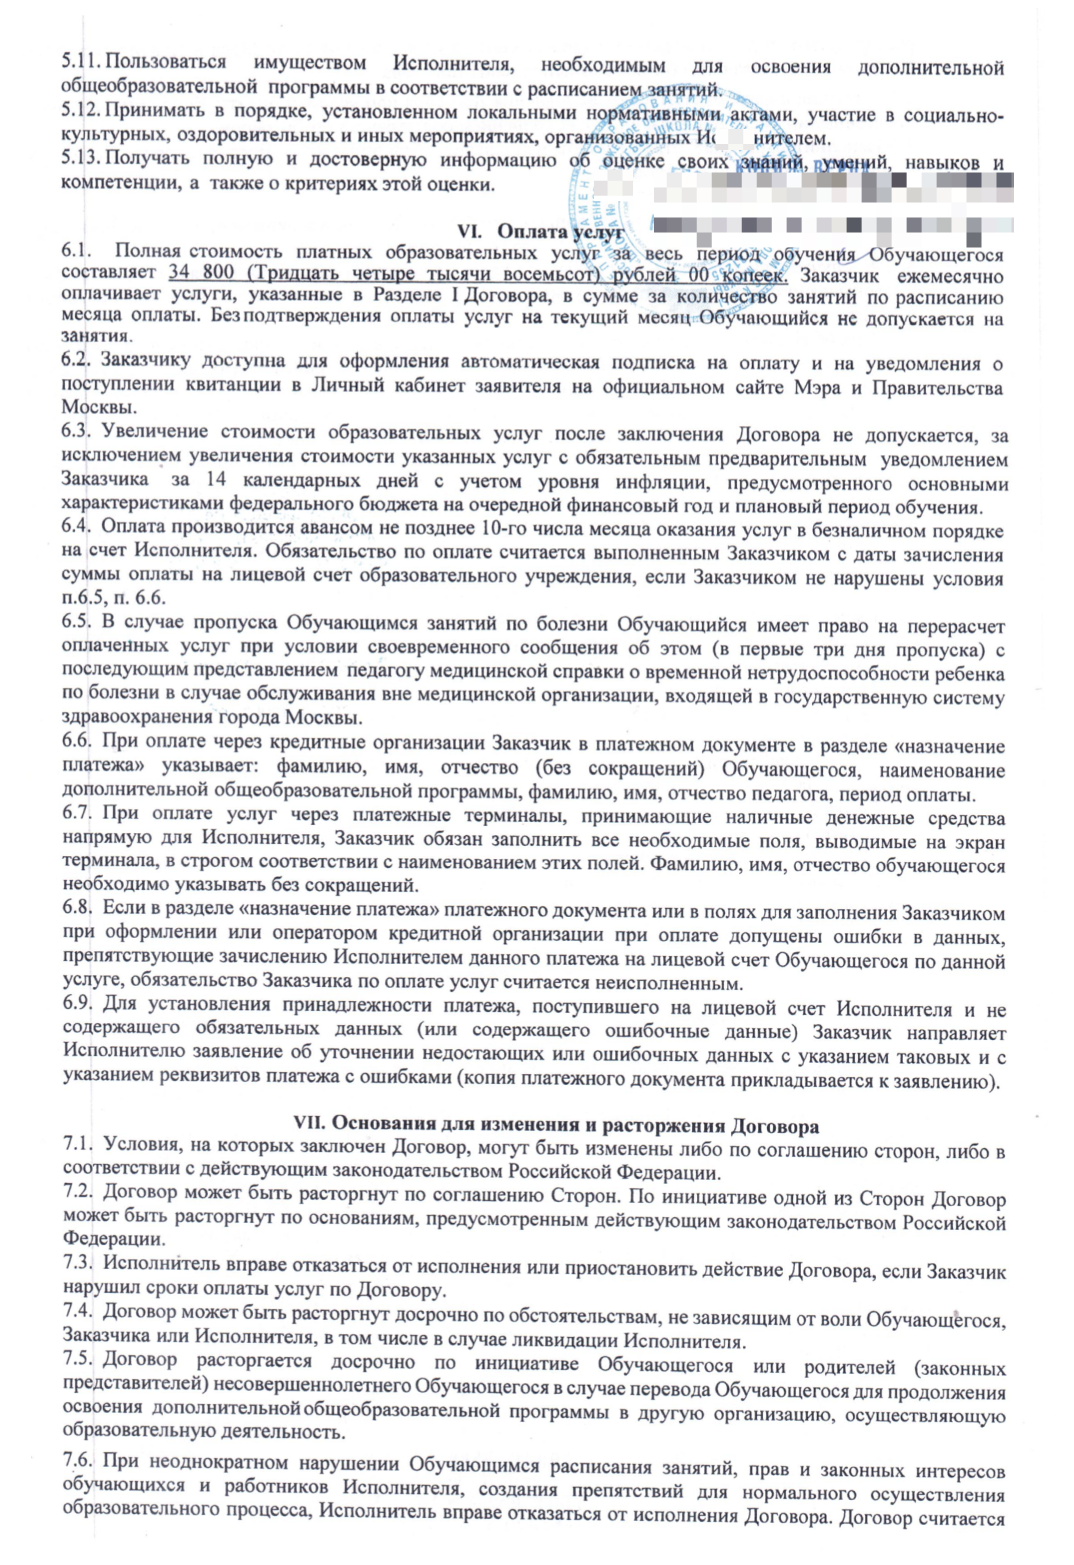 Как получить сертификат на региональный материнский капитал московская область